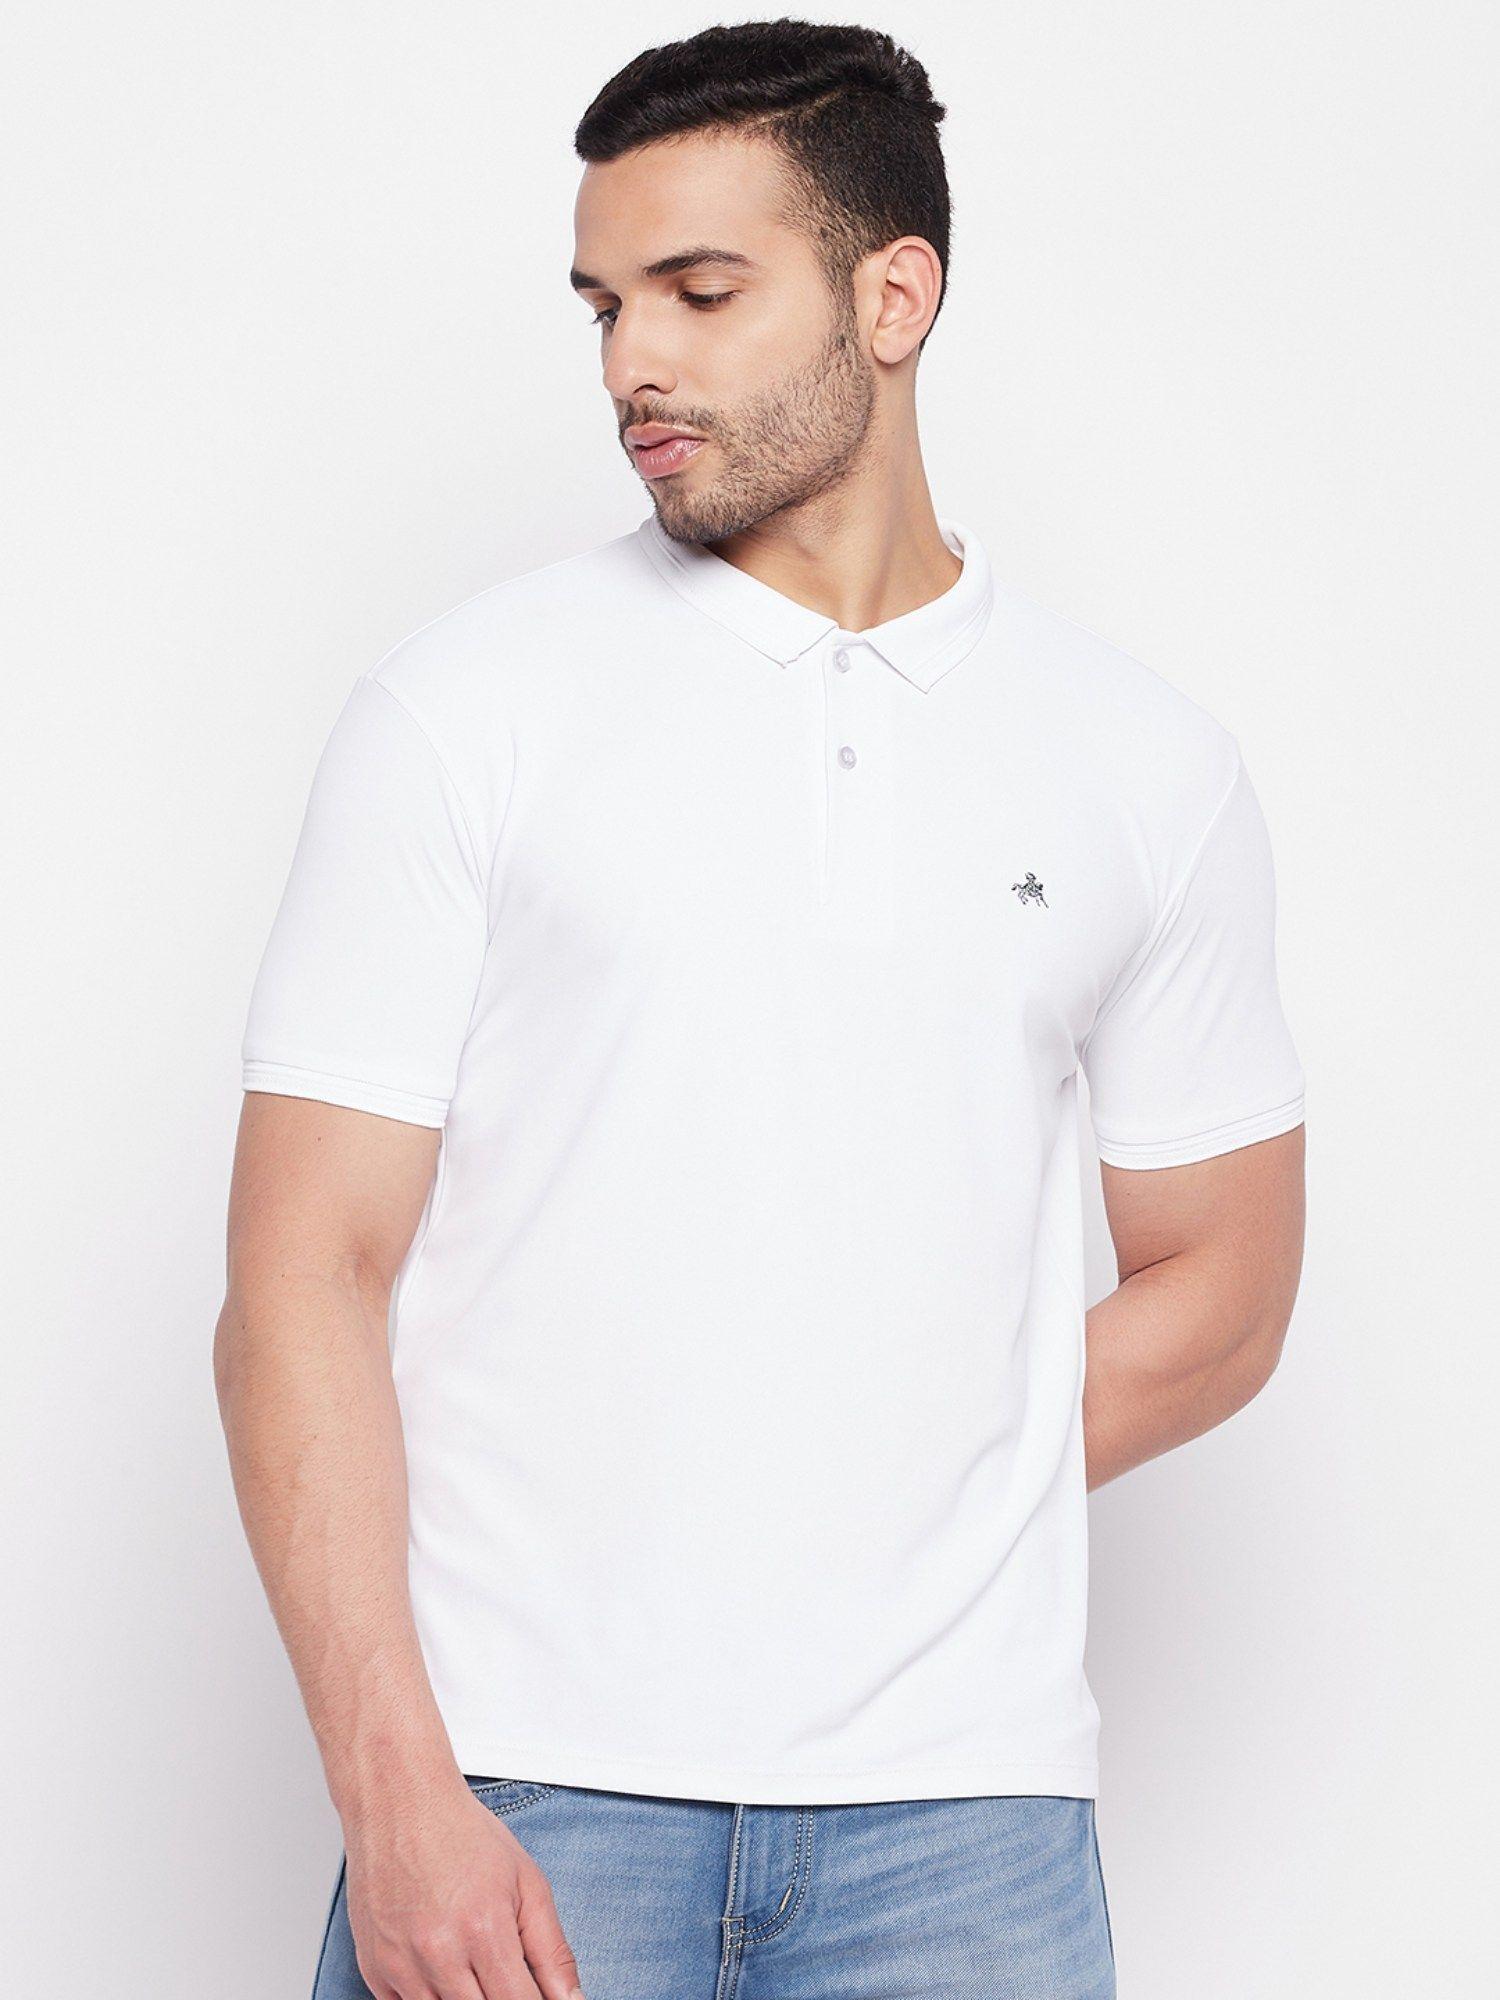 men's white printed polo neck t-shirt